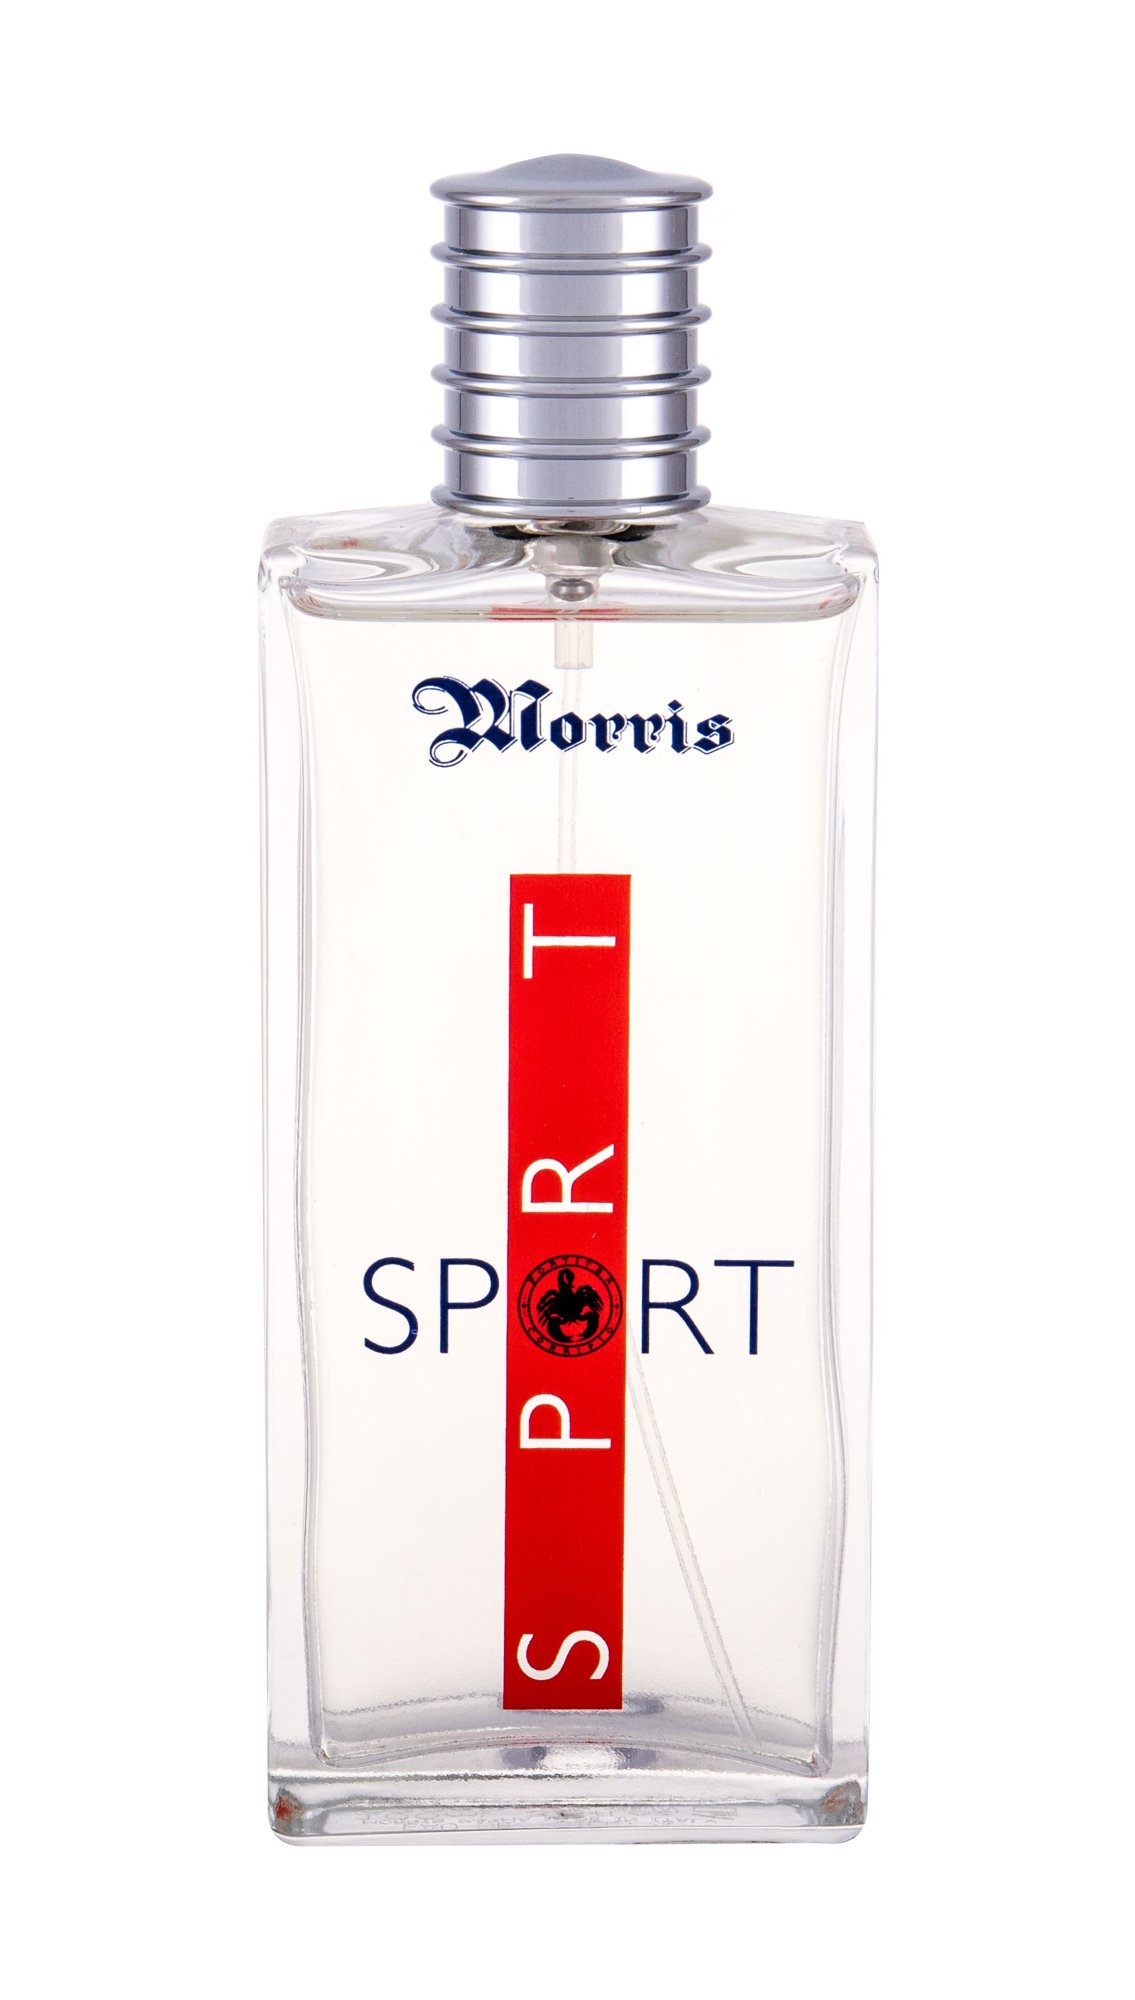 Morris Sport